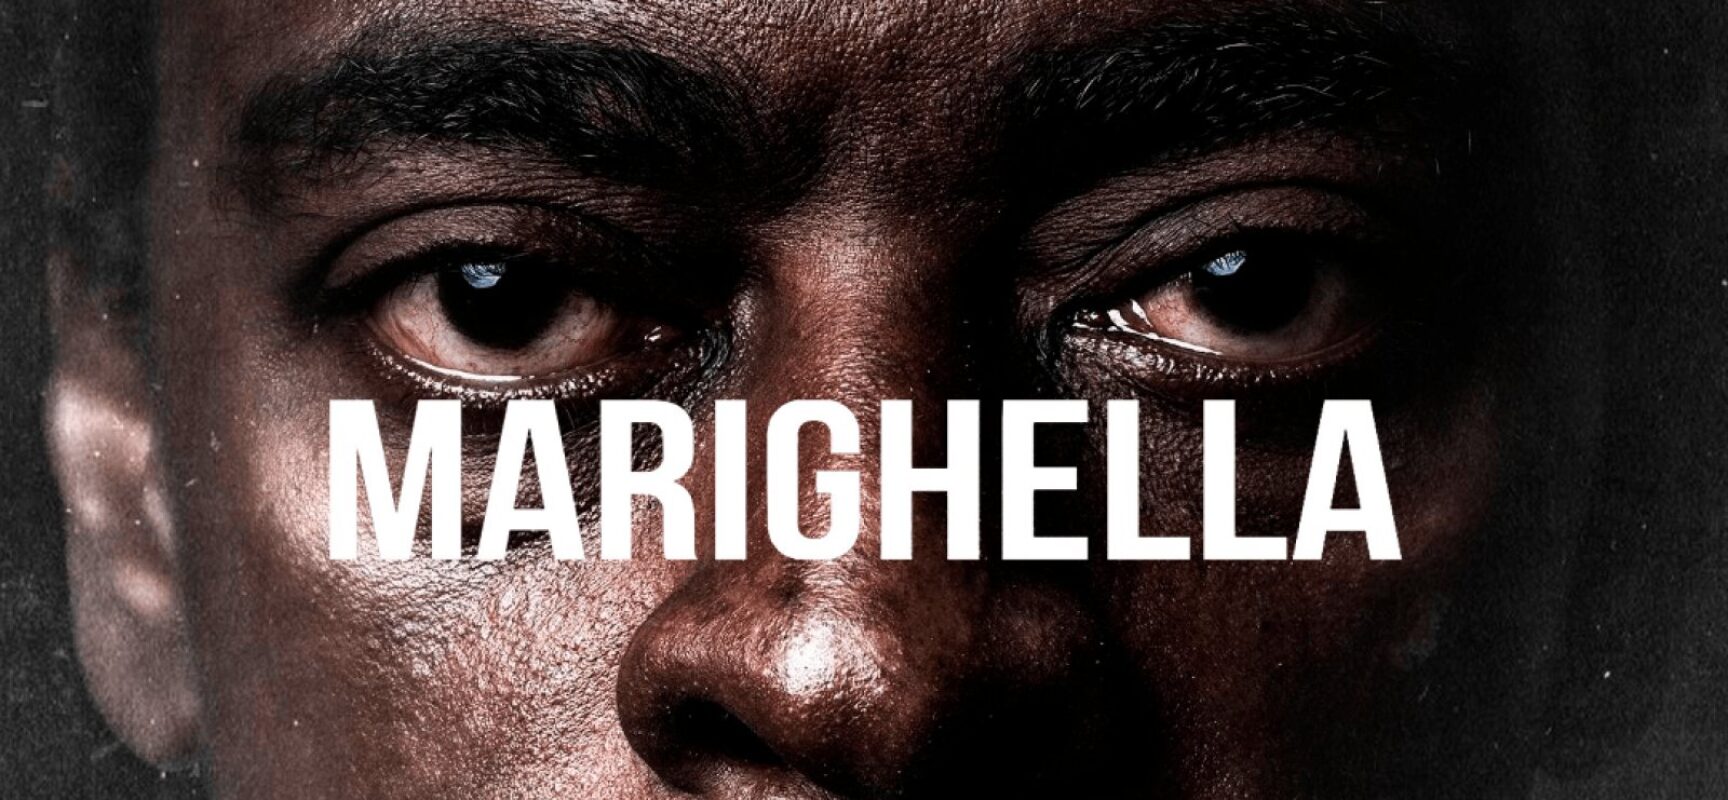 Filme ‘Marighella’ é alvo de campanha negativa no site IMDb